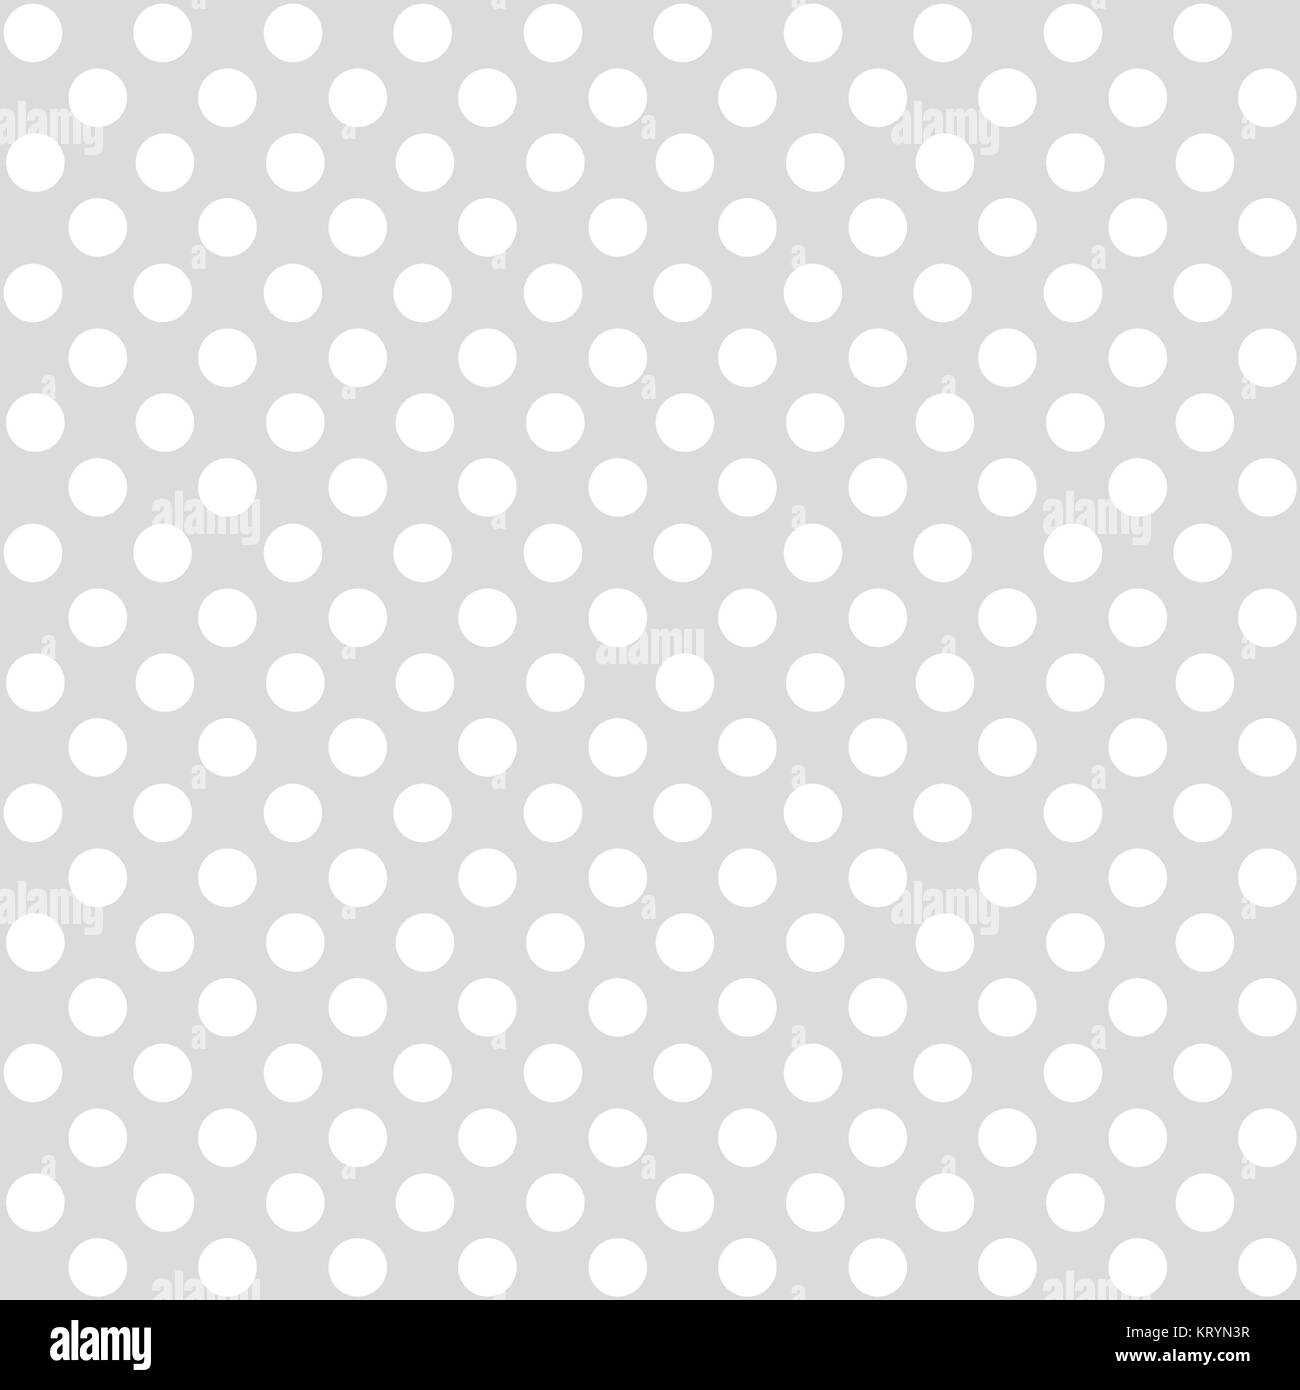 seamless dots pattern light gray white Stock Photo